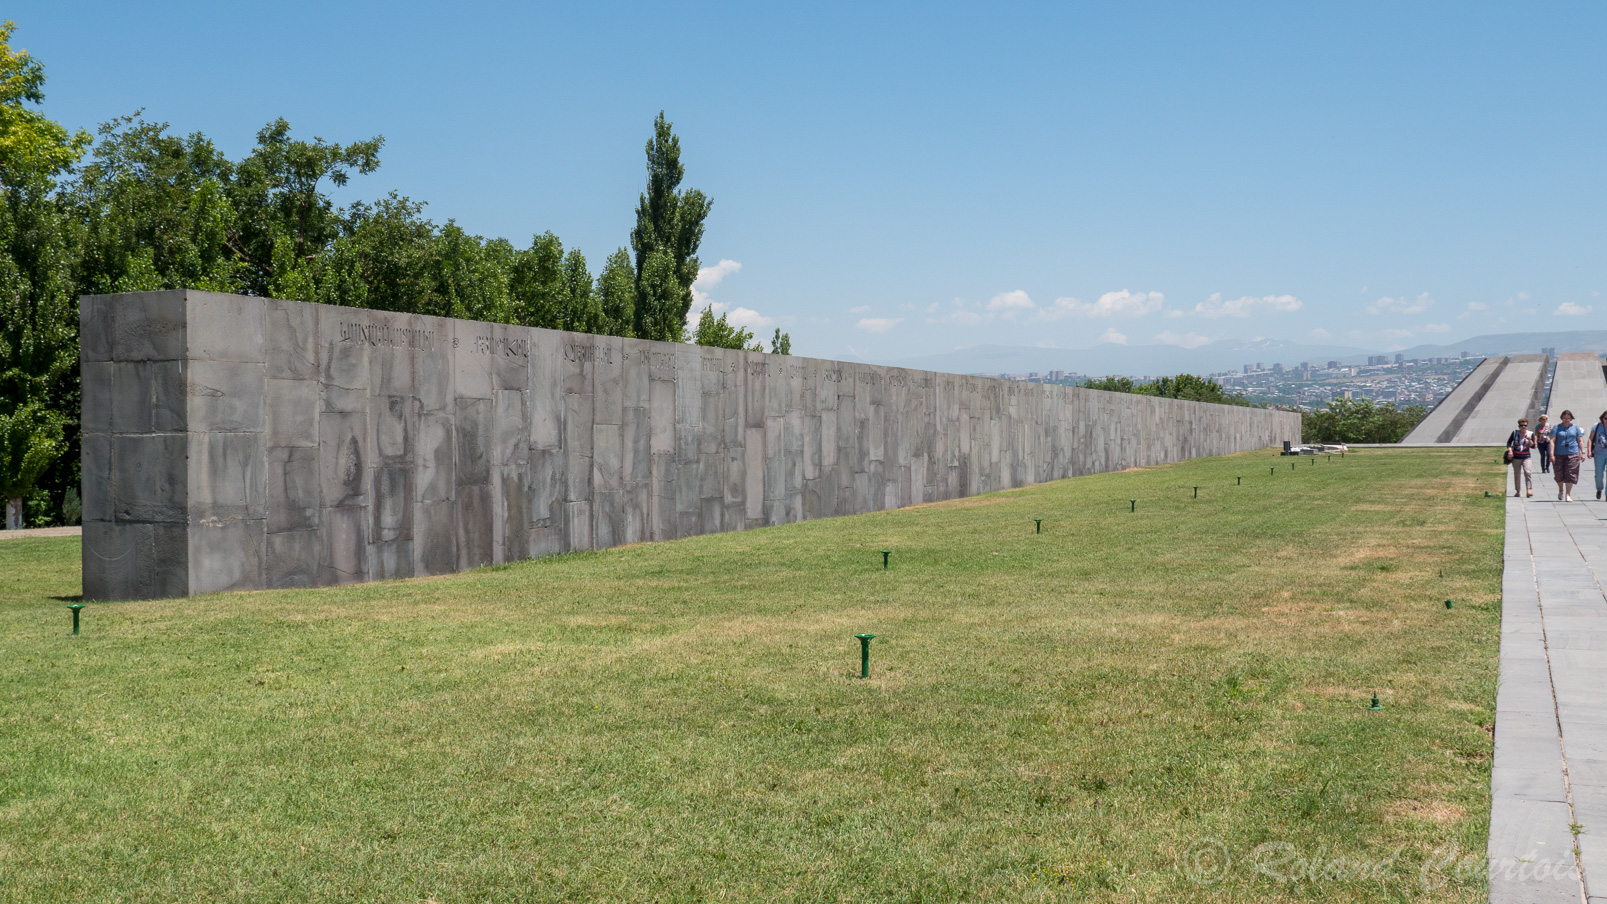 Mémorial de Tsitsernakaberd "La forteresse des hirondelles" Dédié aux victimes du génocide de 1915. Ce mur porte les inscriptions des principaux villages arméniens de l'empire ottoman dans lesquels ont eu lieu les massacres.